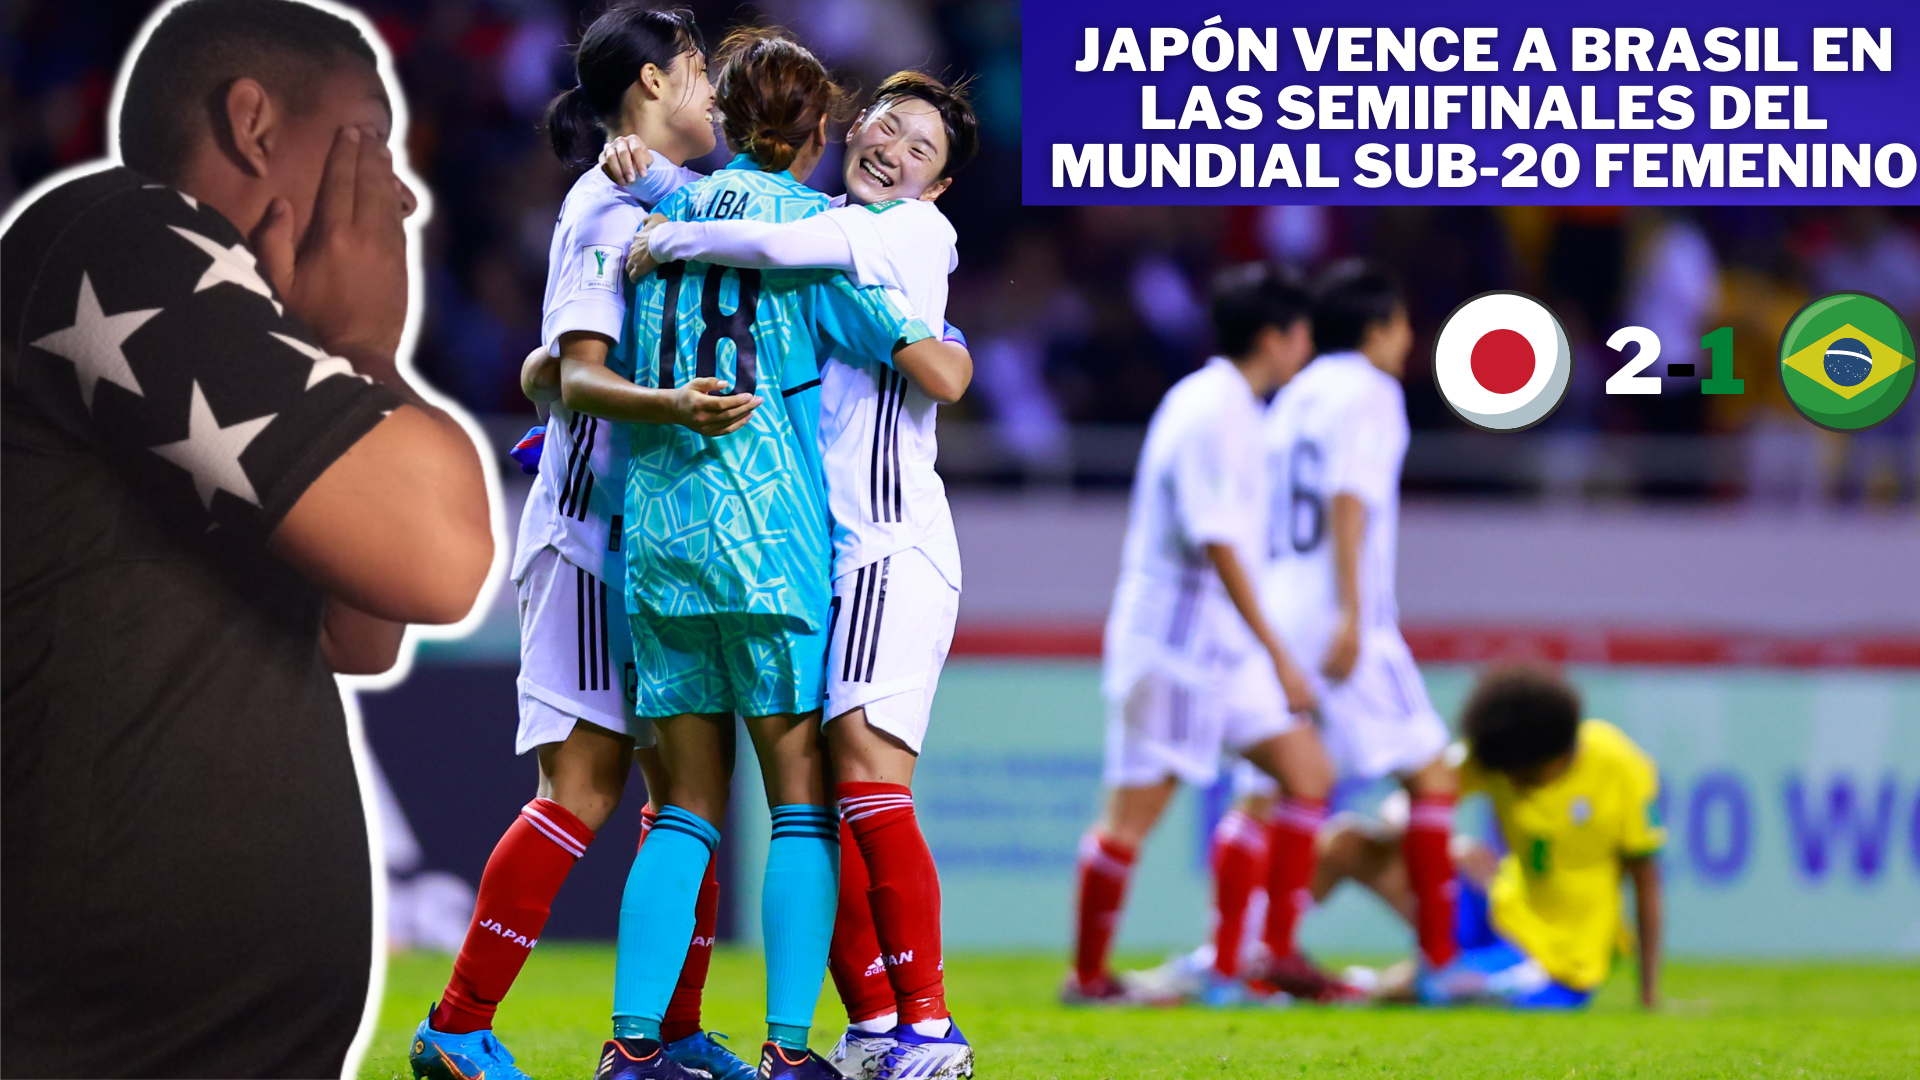 japón vence a brasil en las semifinales del mundial sub-20 femenino.png